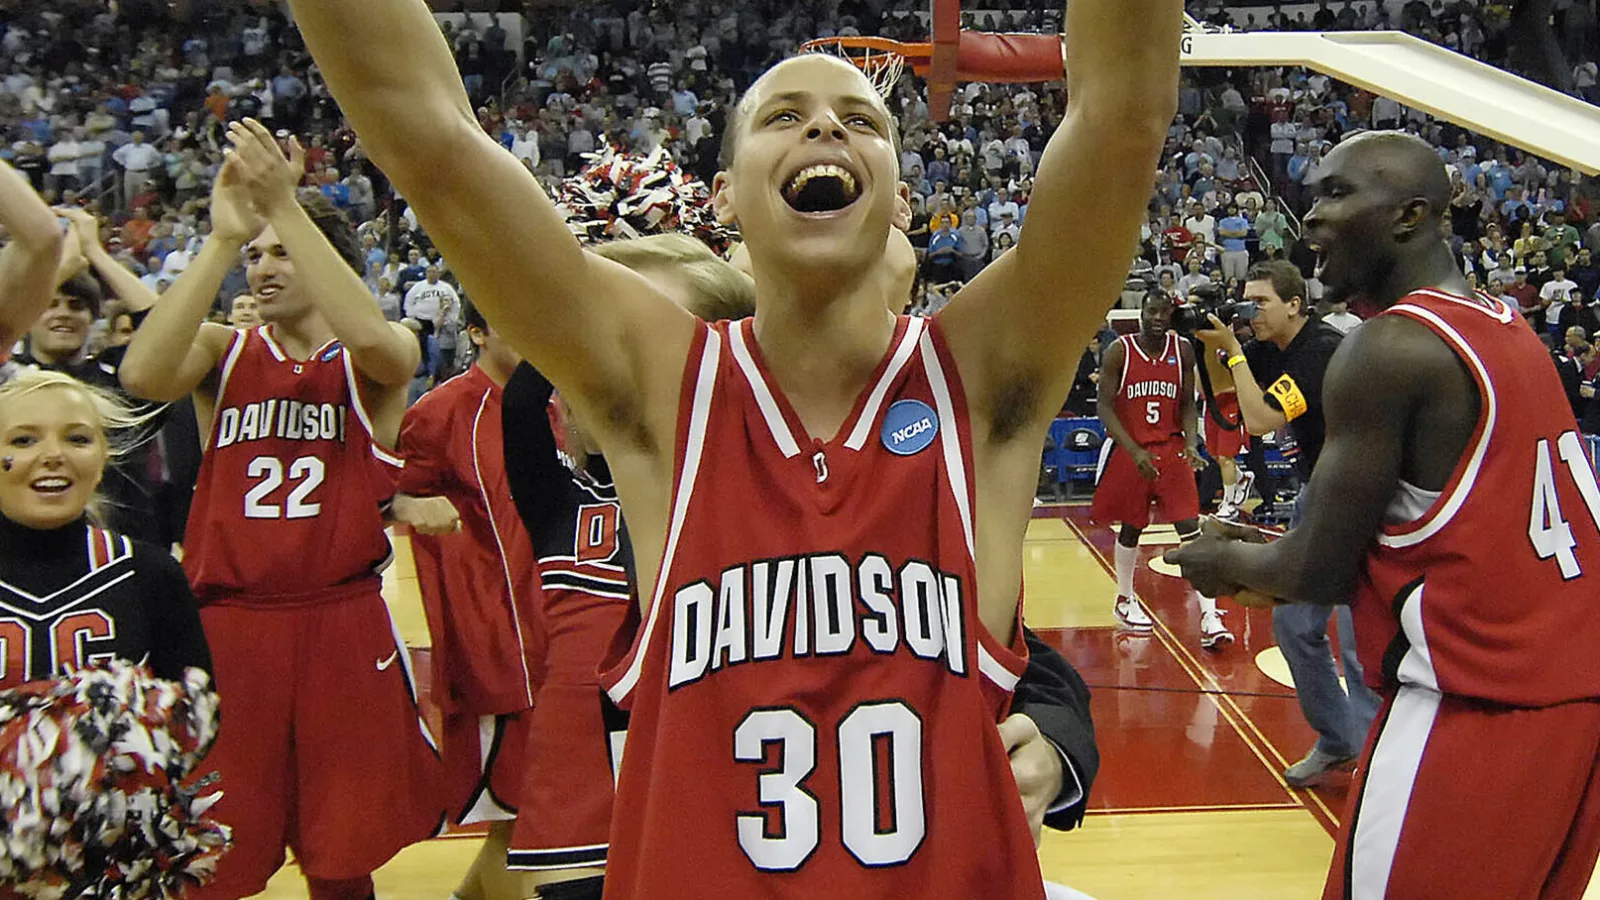 L'université de Davidson va retirer le maillot de Stephen Curry